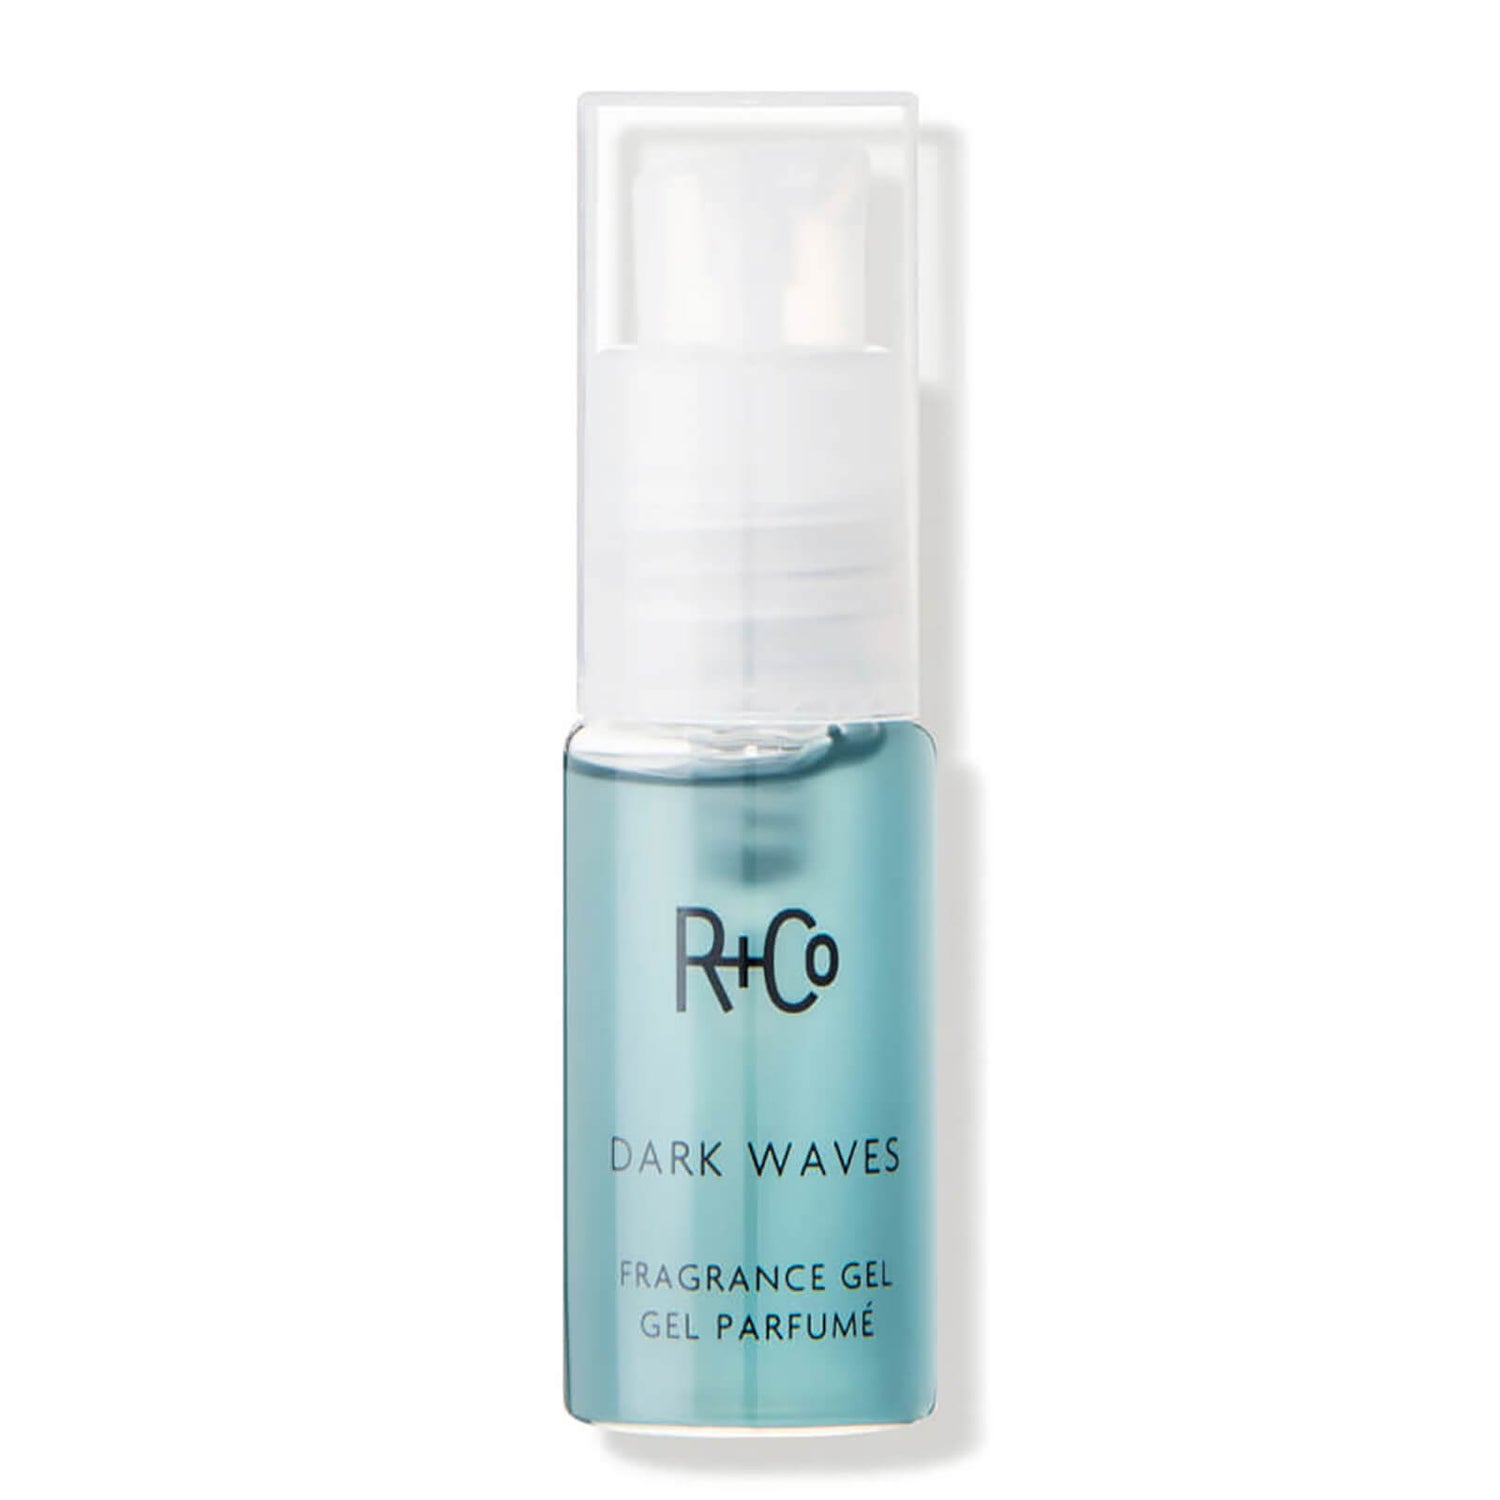 R+Co DARK WAVES Fragrance Gel (0.5 fl. oz.)